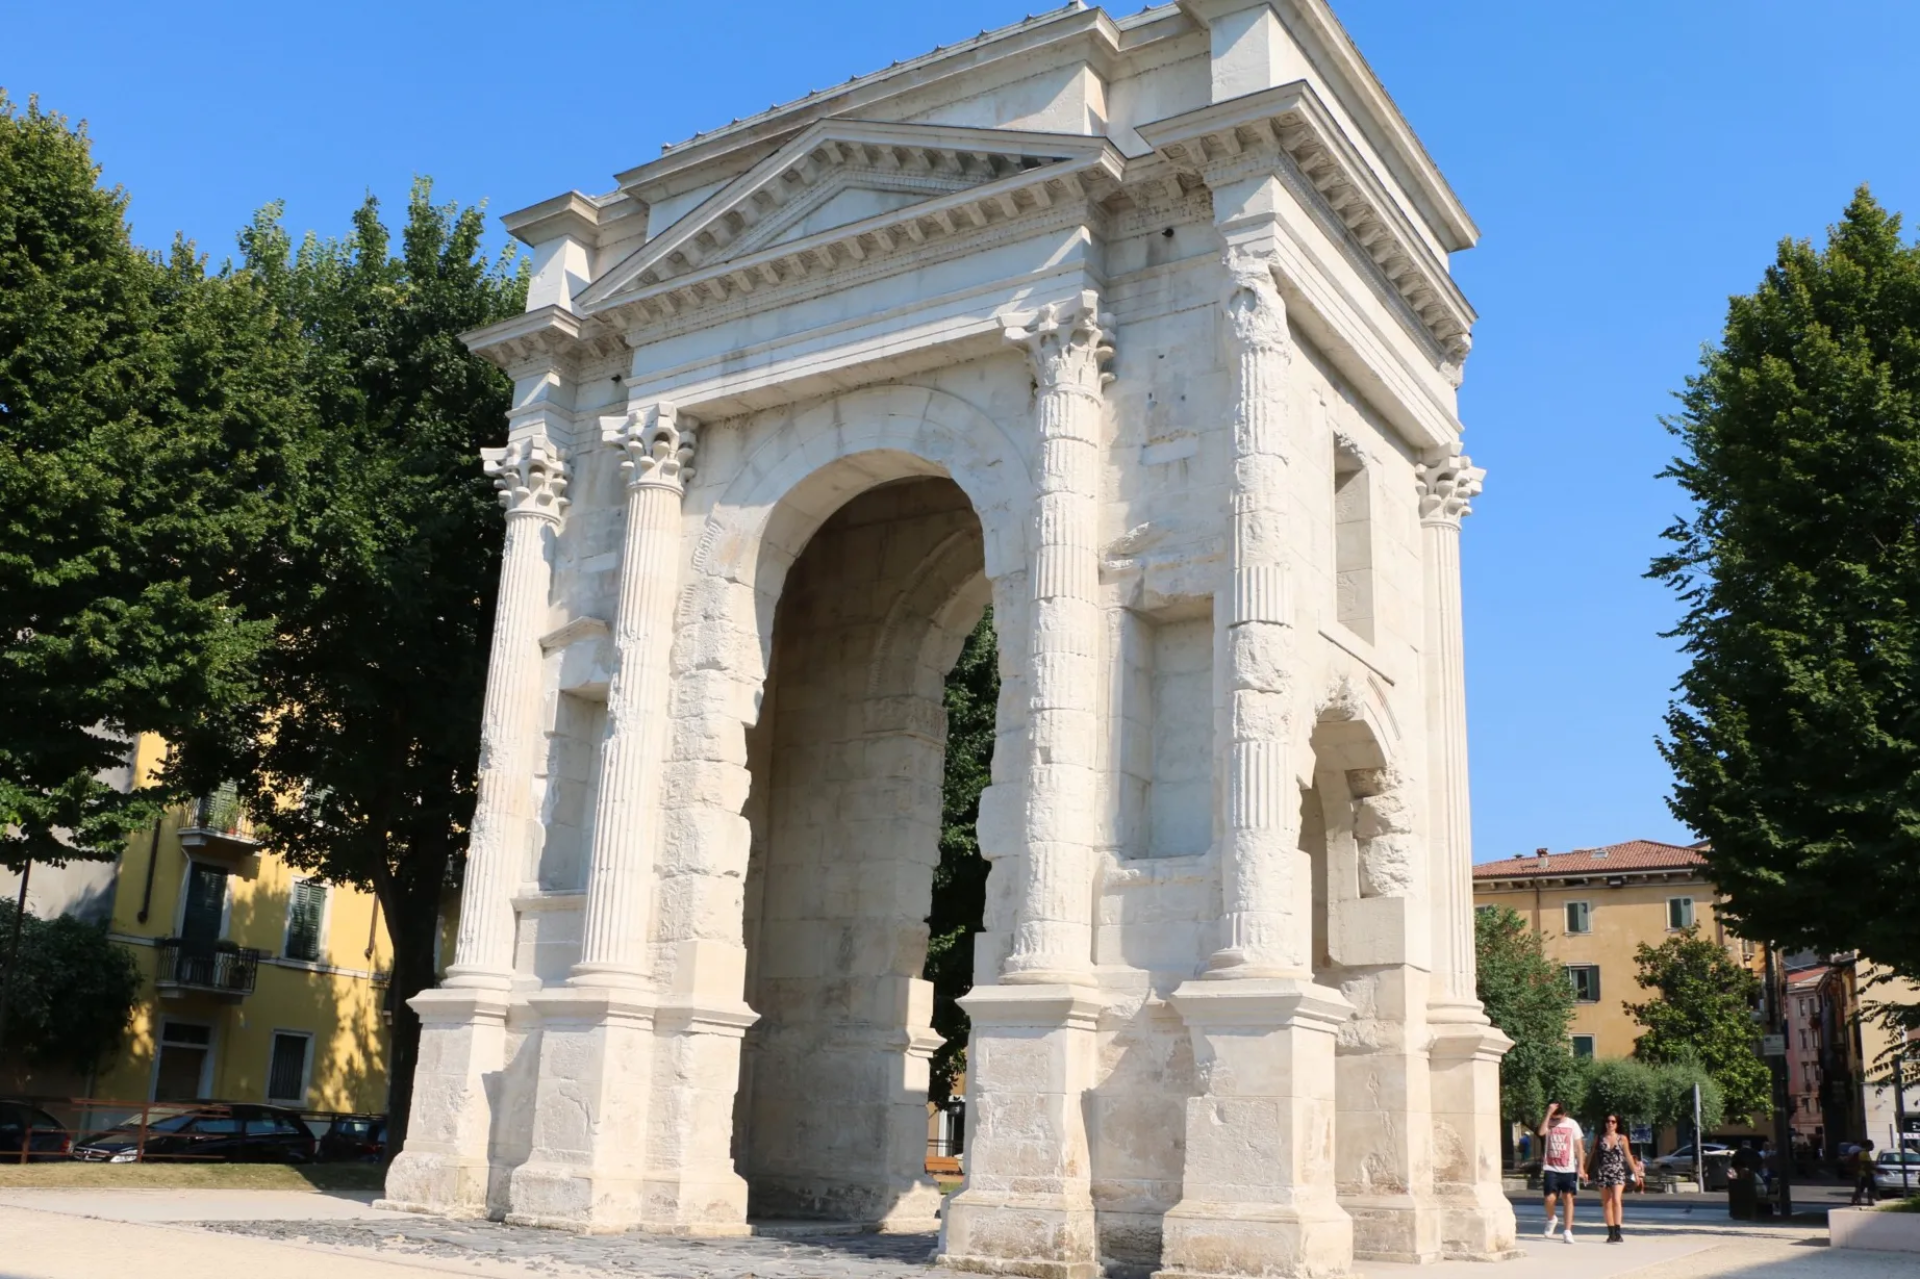 Arco dei Gavi